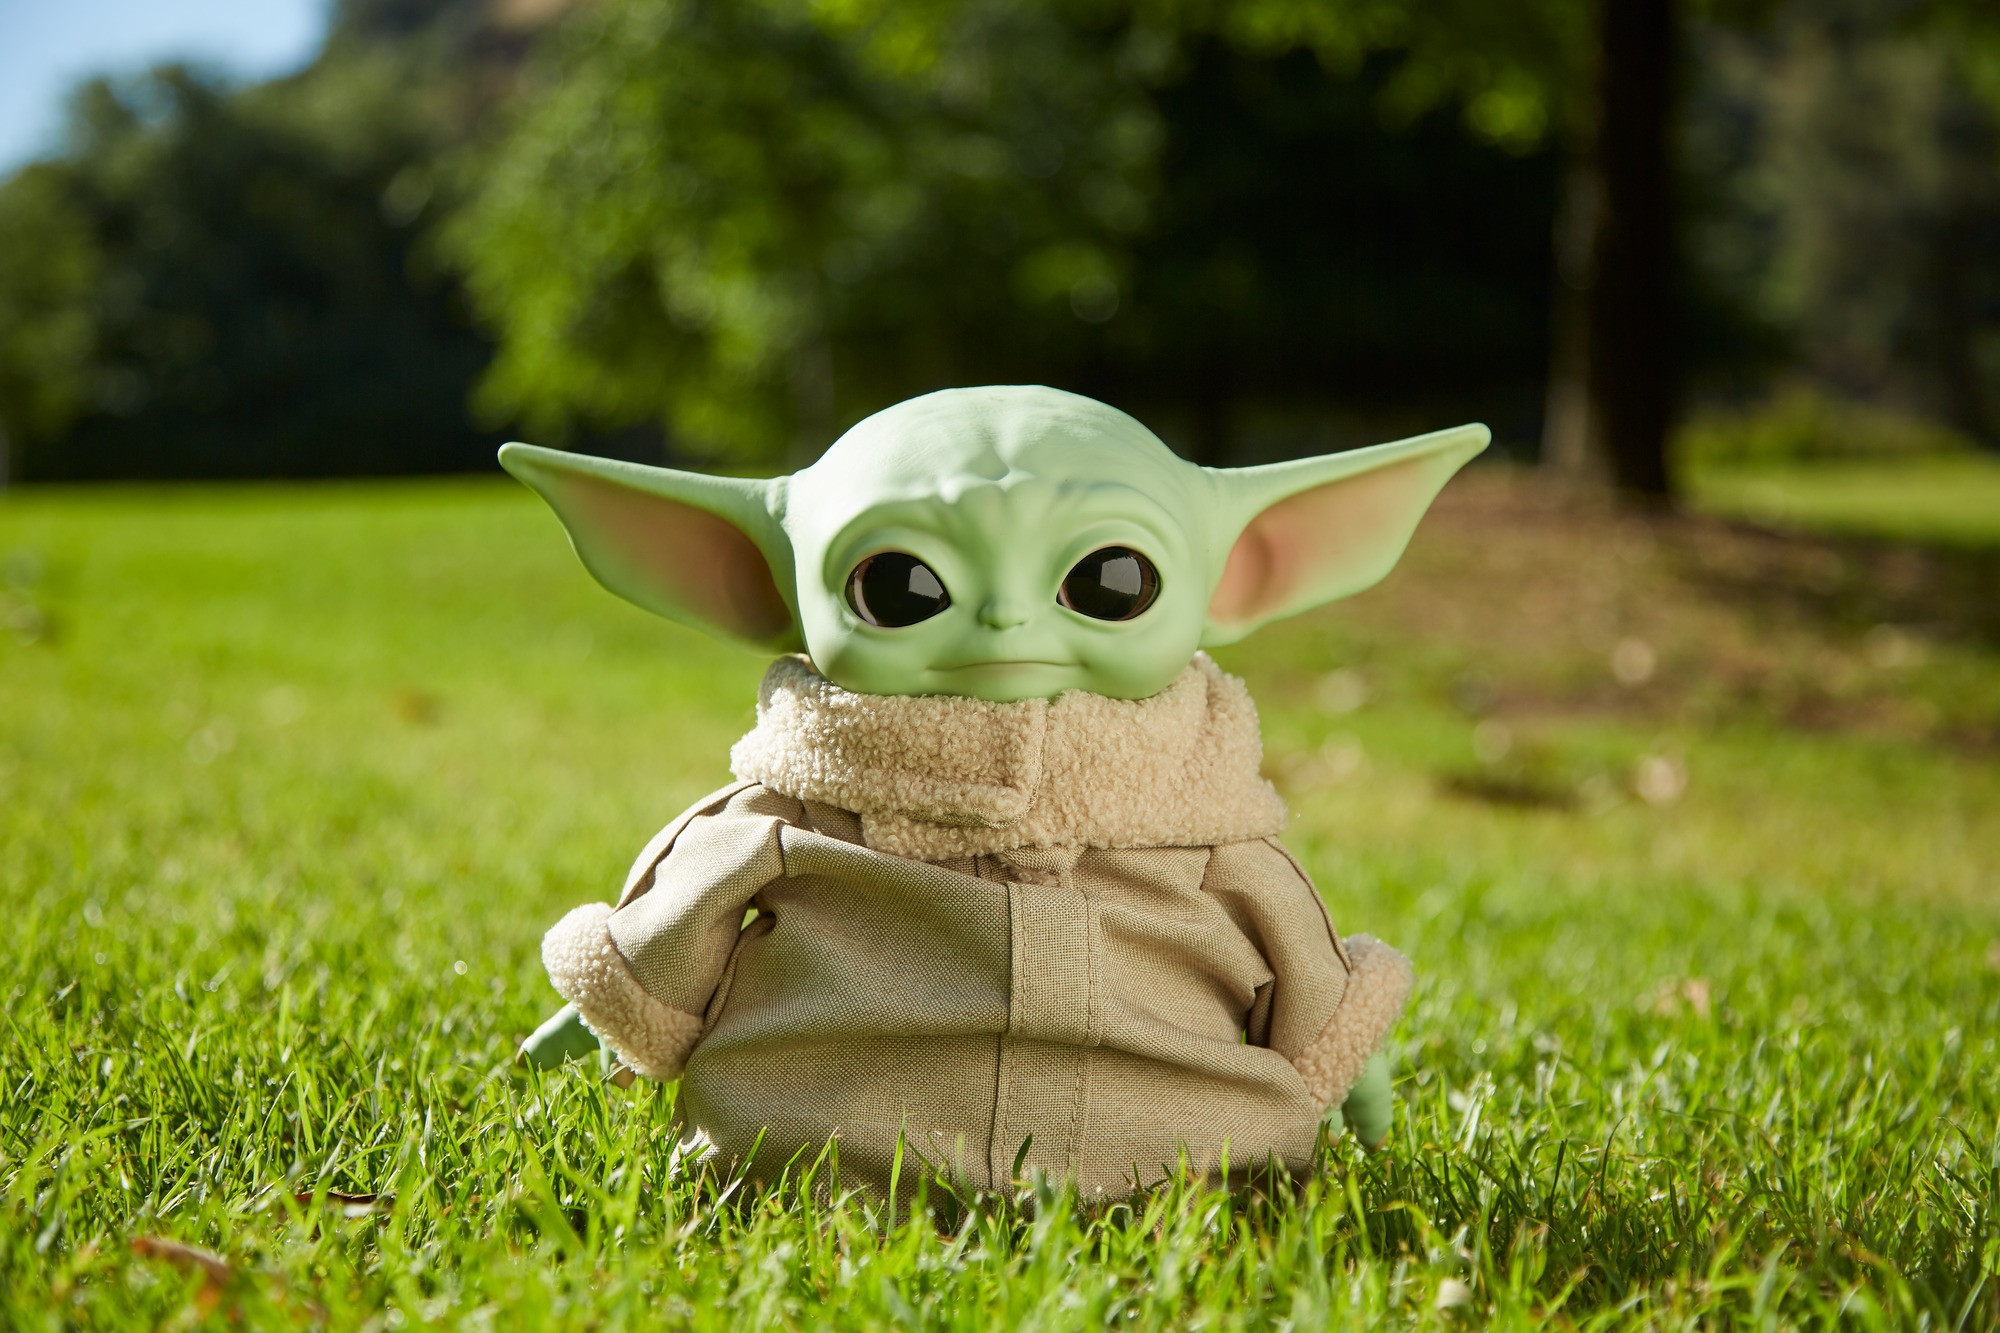 Star Wars Baby Yoda El niño de la serie The Mandalorian